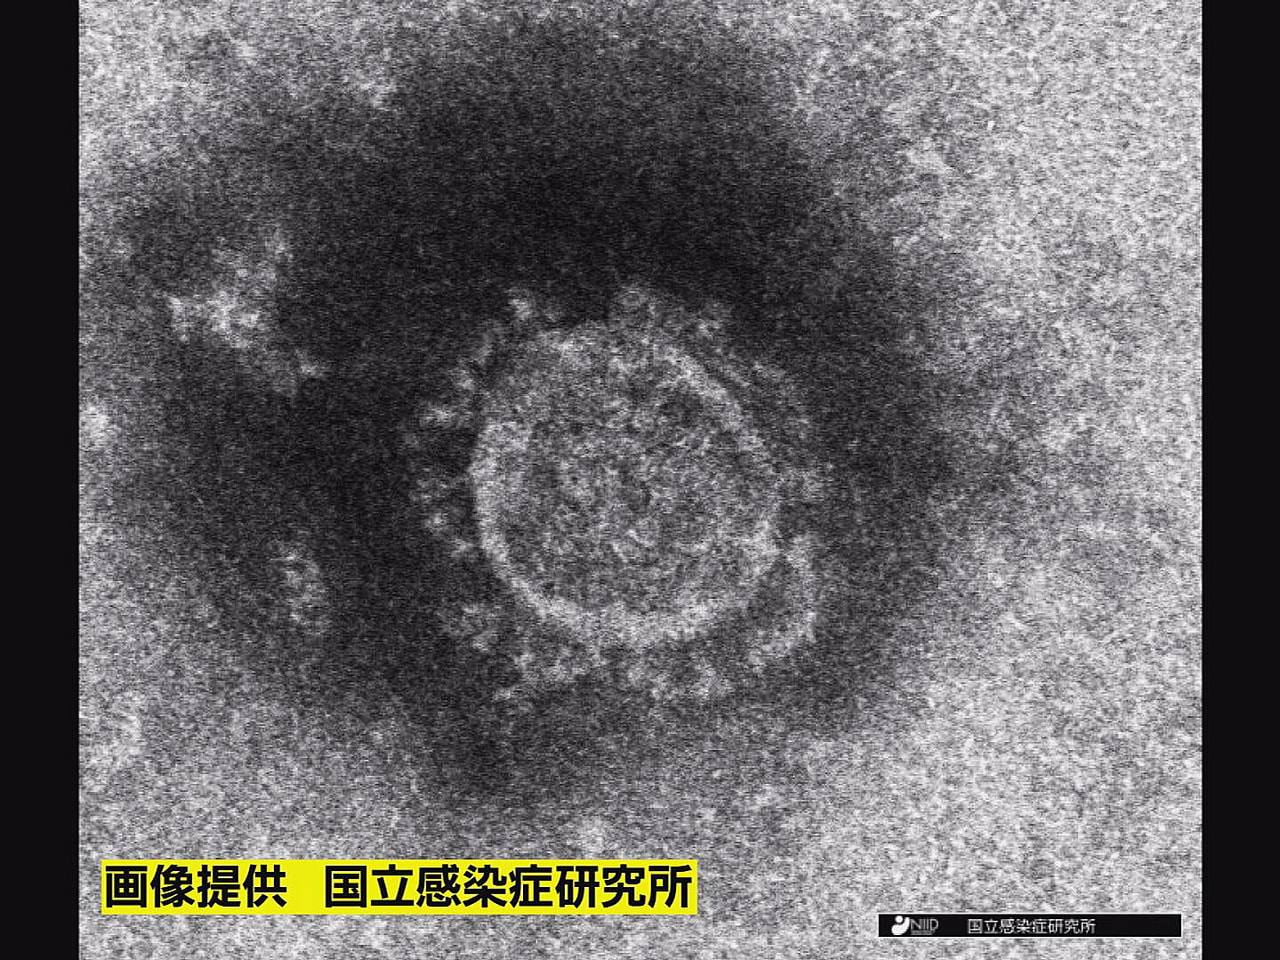 岐阜県は、２５日、県内で新型コロナウイルスの新たな感染は確認されなかったと発表し...